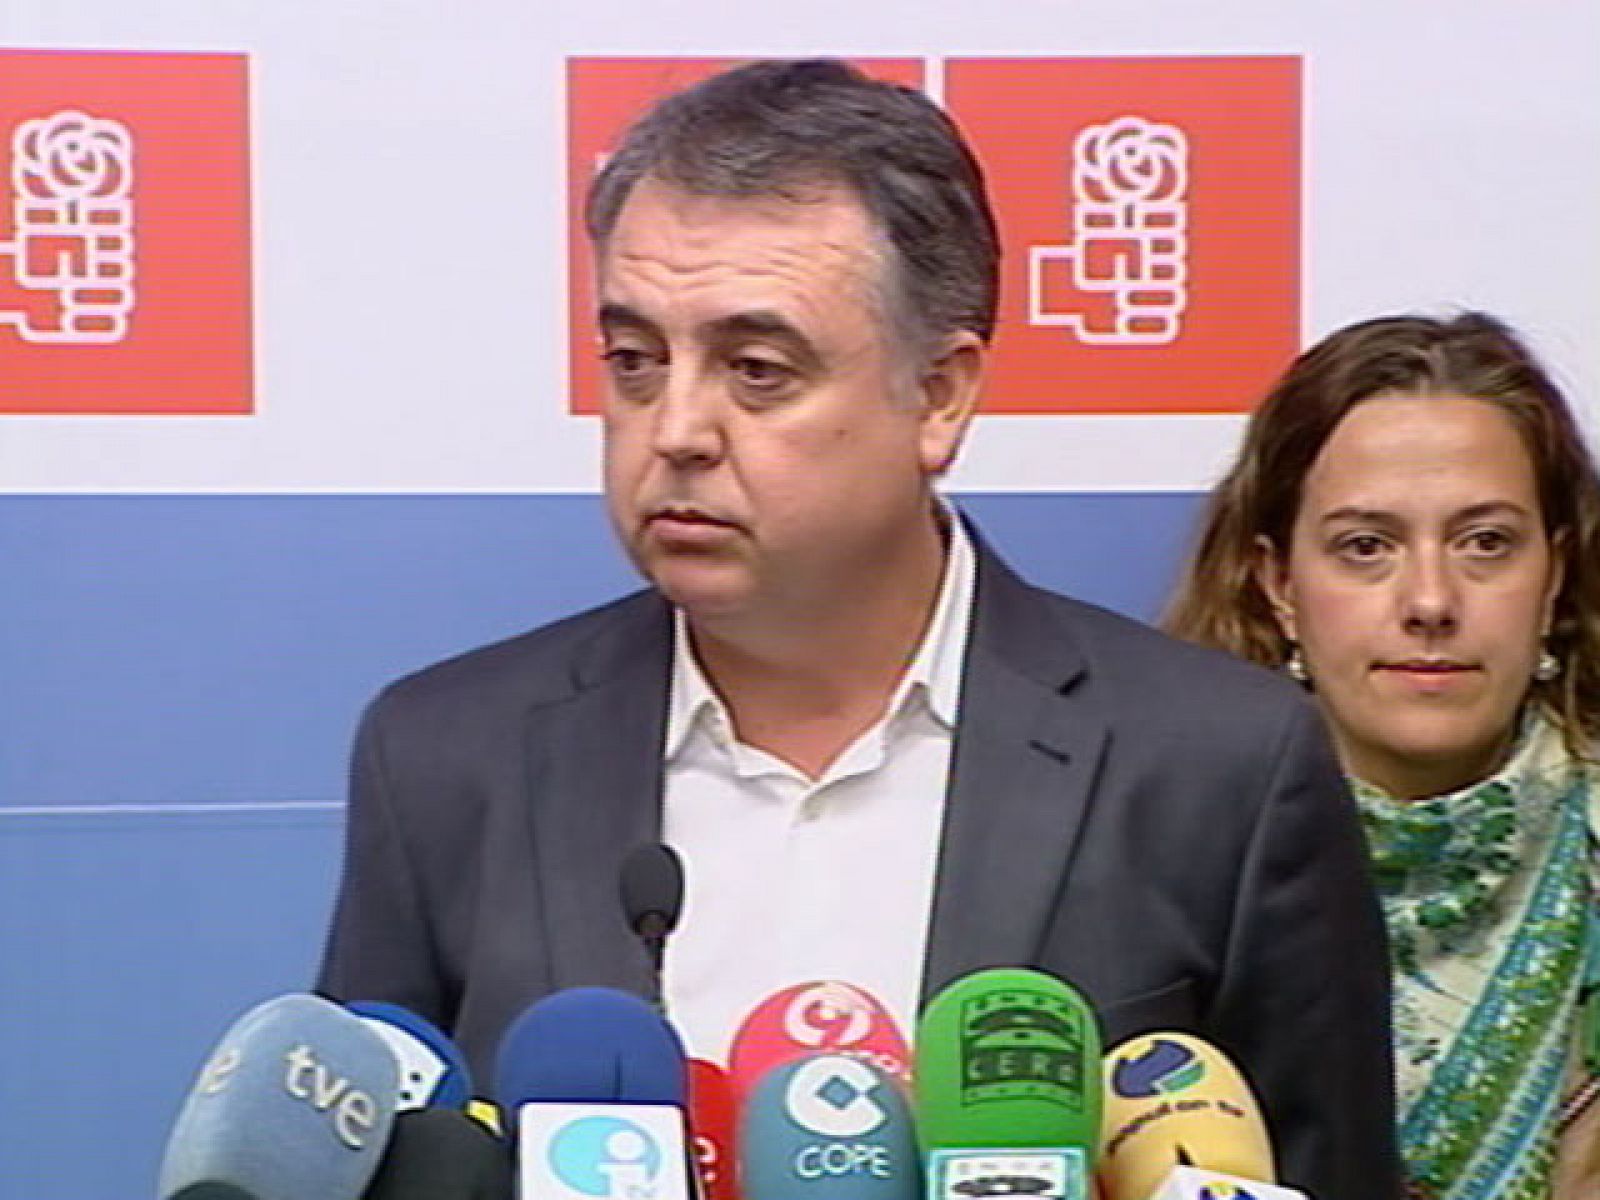 Roque Moreno, portavoz del PSOE en el Ayuntamiento de Alicante, ha reconocido ante las cámaras que pidió favores al principal imputado en la trama, el empresario Enrique Ortiz, y ha dimitido.